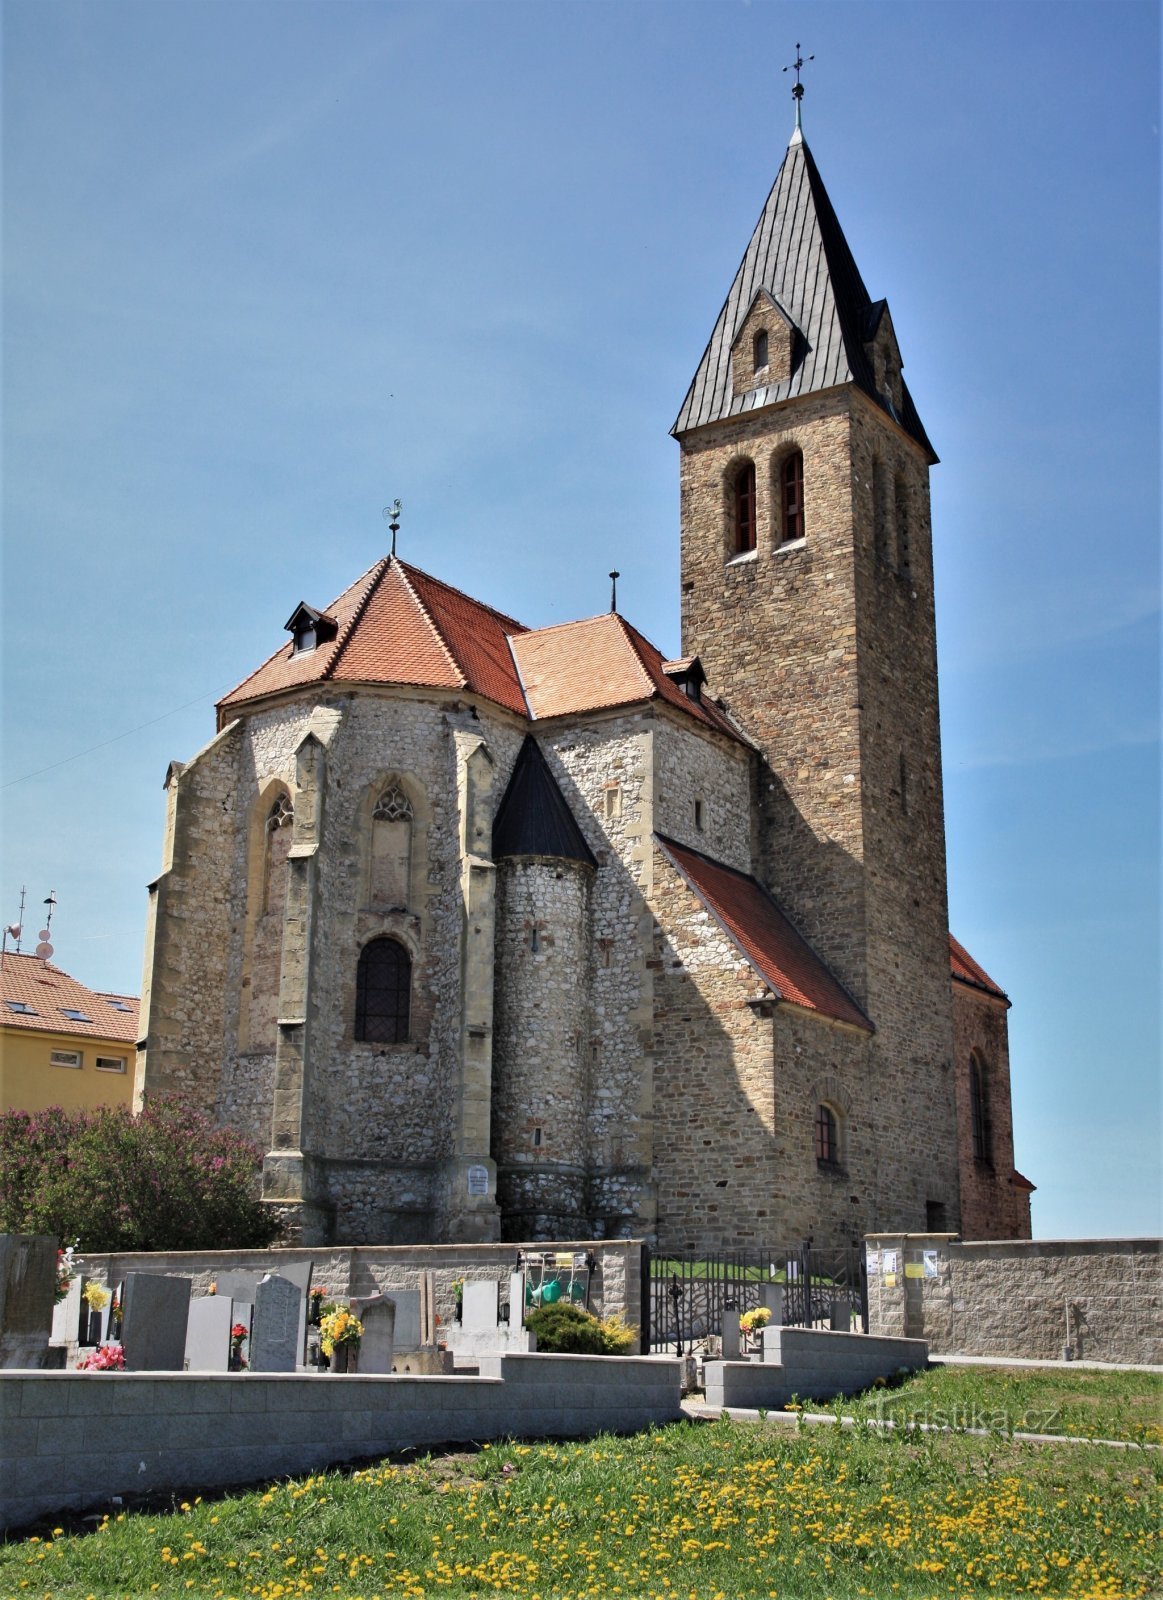 Jaječí - Igreja de St. Jan Ktitel